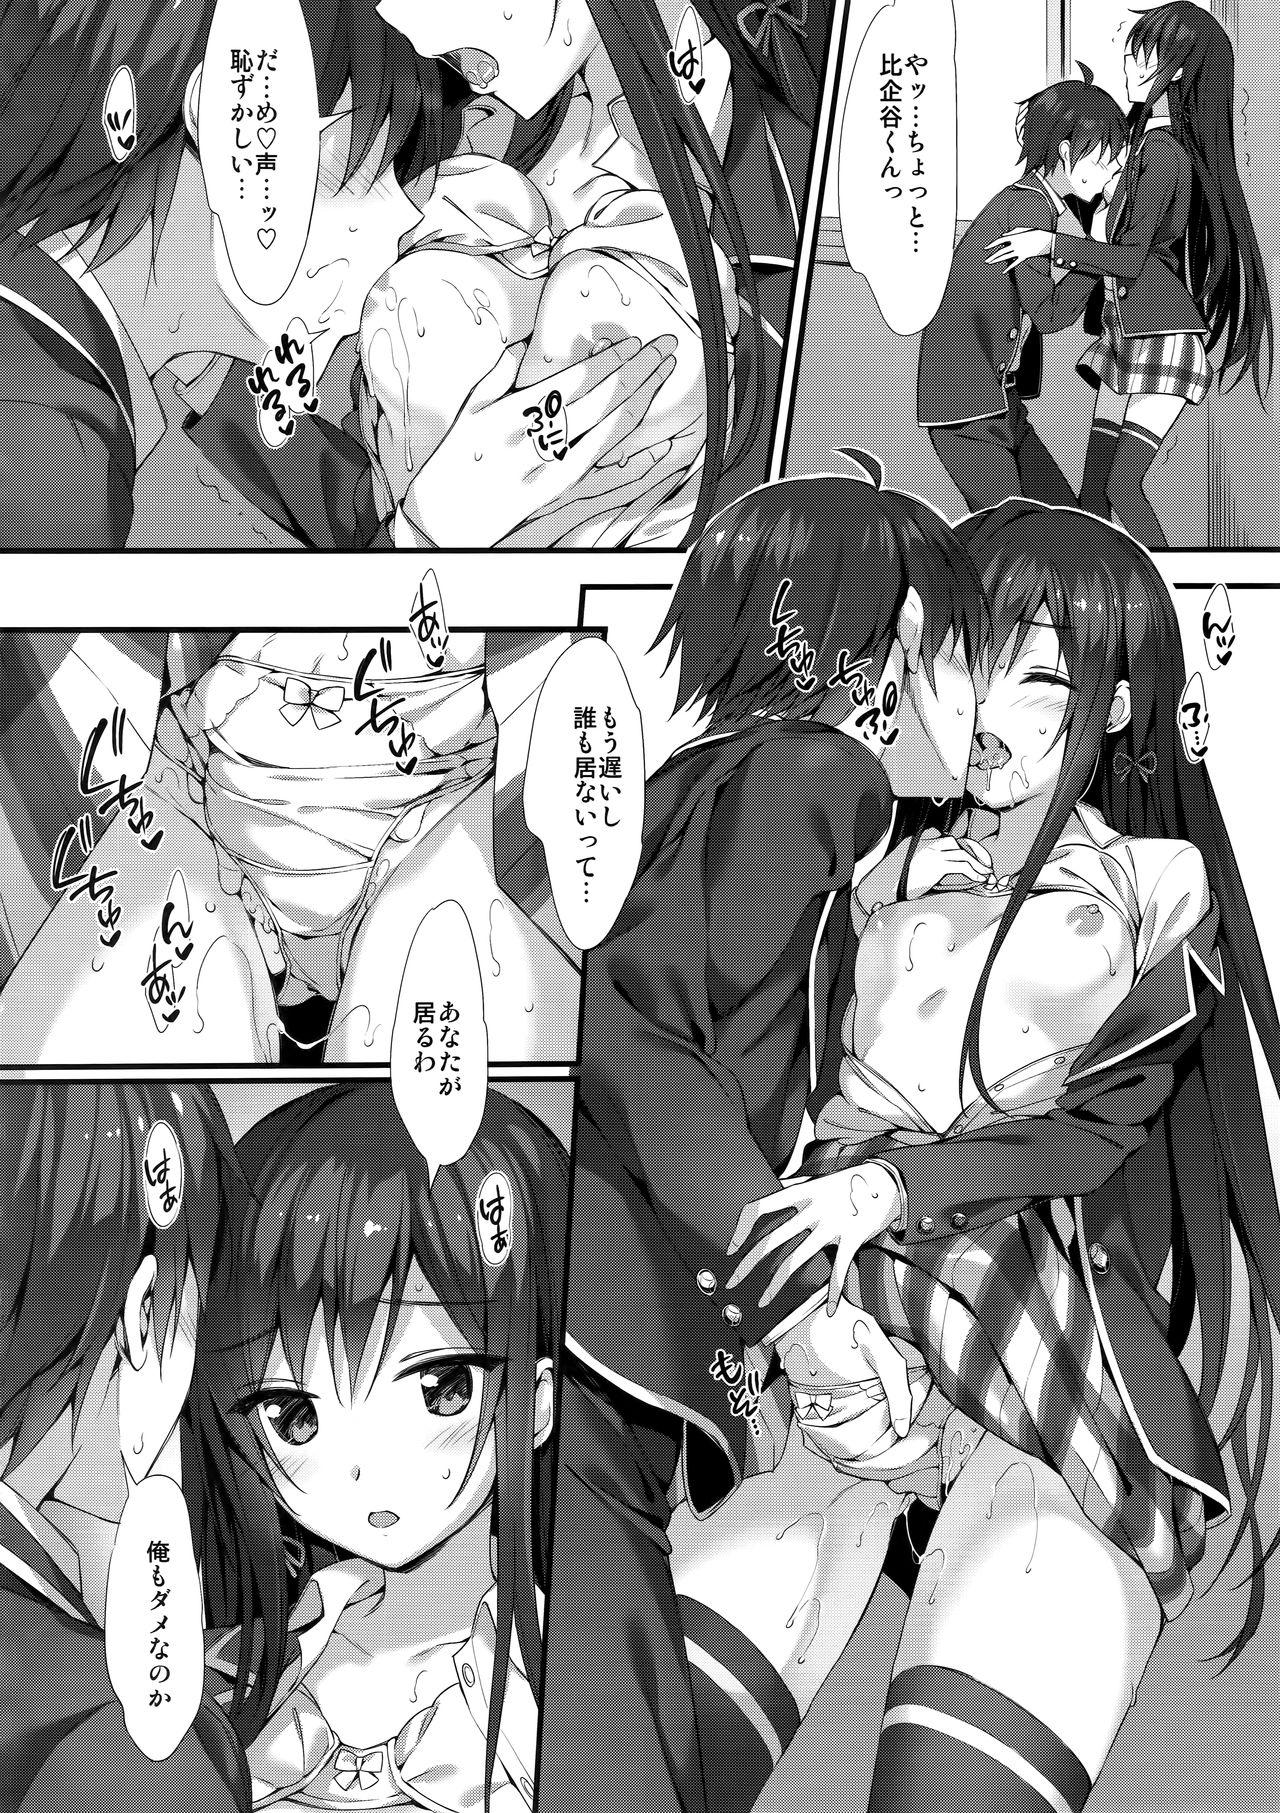 Clitoris Yukinon Gentei 3 - Yahari ore no seishun love come wa machigatteiru Orgasm - Page 4